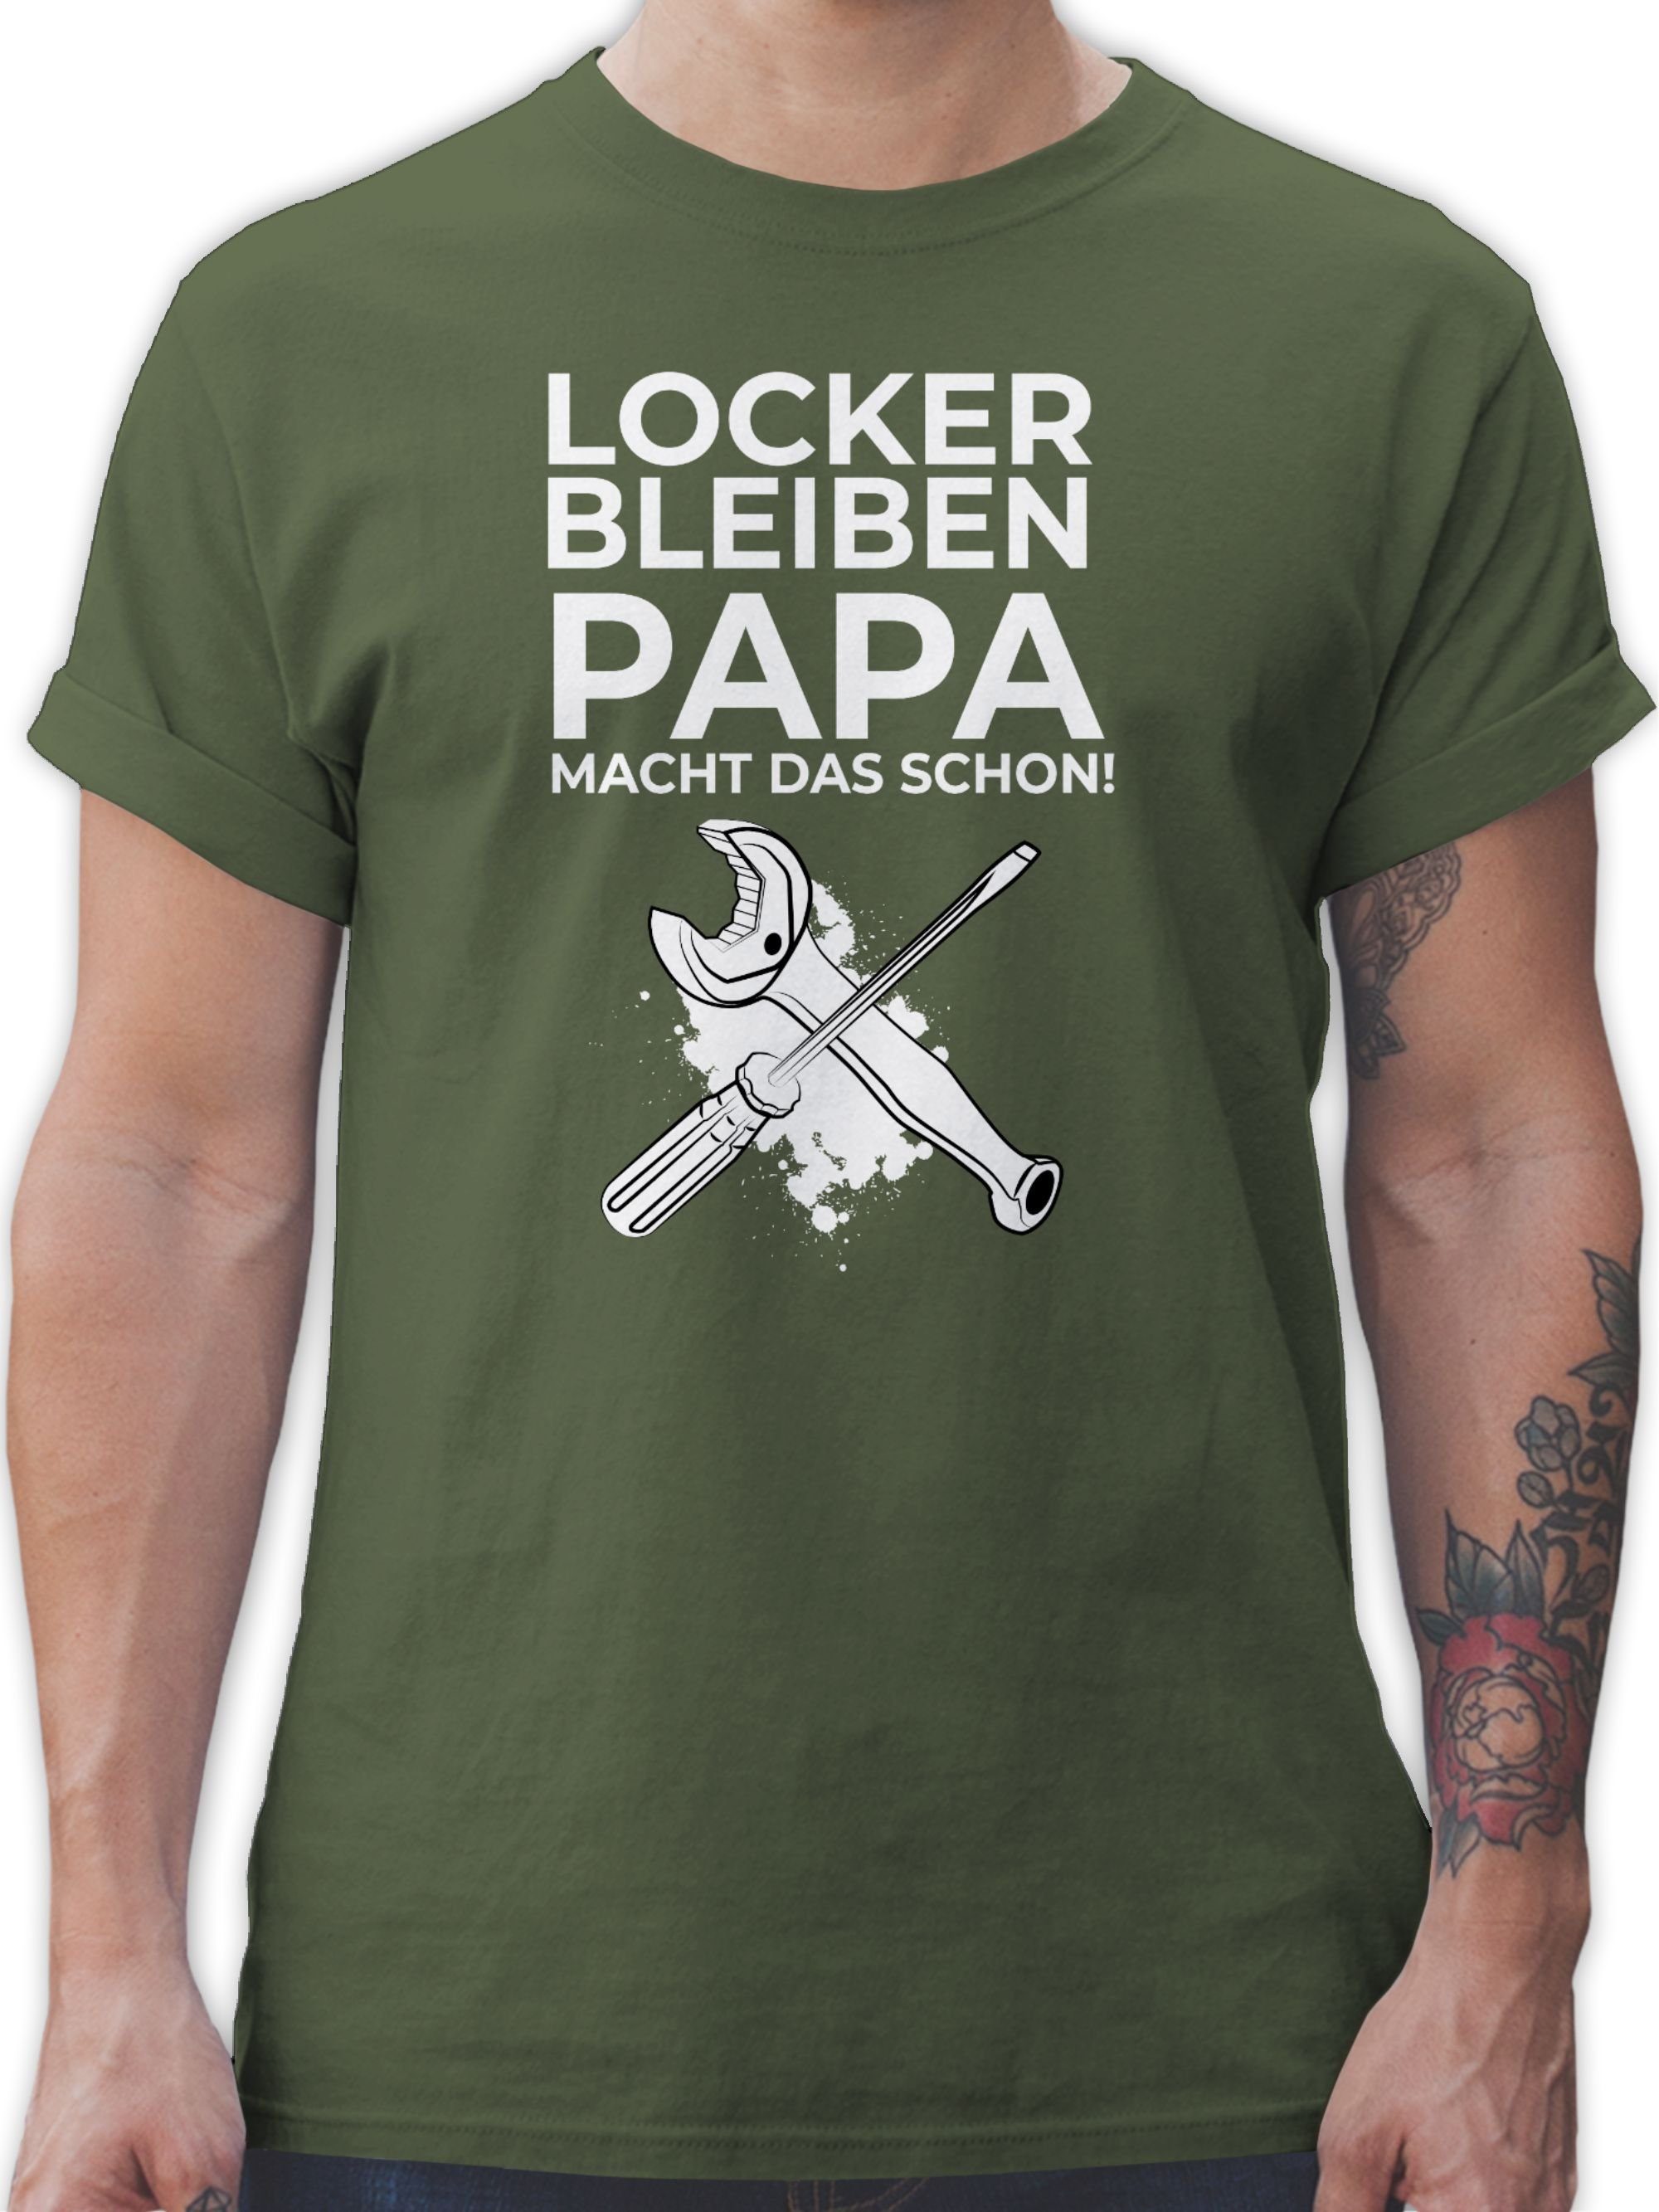 Shirtracer T-Shirt schon bleiben Papa Locker 3 Handwerker macht das Werkzeug Army Grün Geschenke